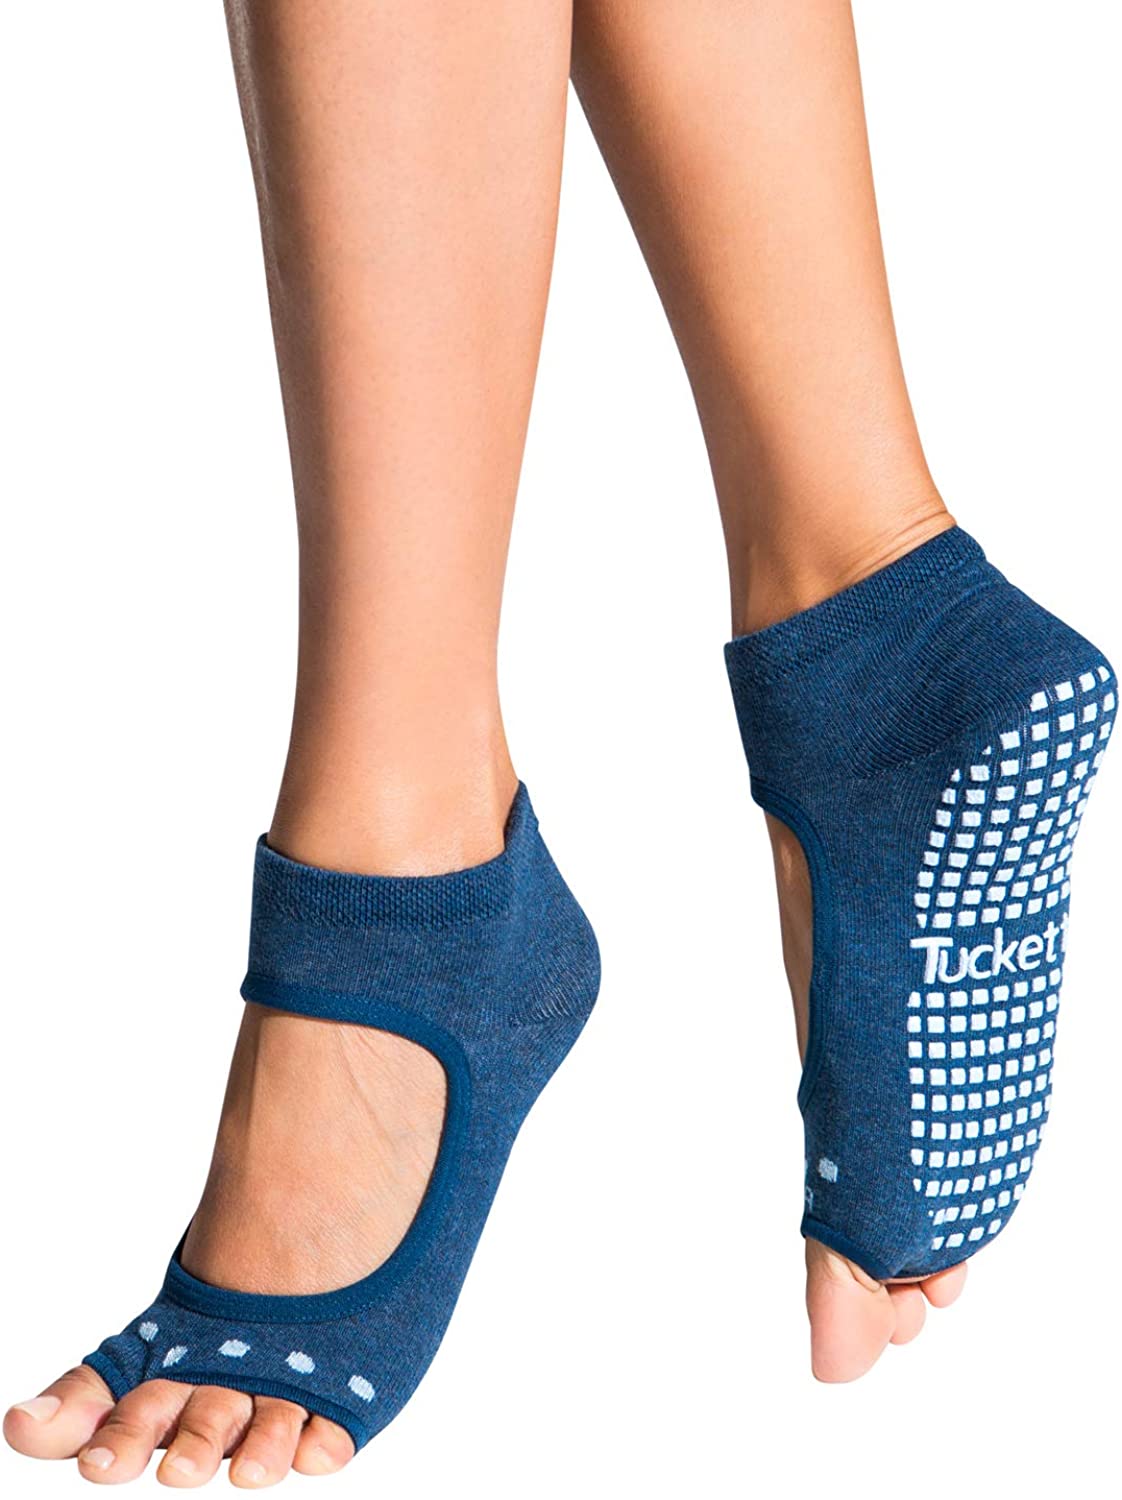 Hicdaw 4 pares de calcetines de yoga para pilates, calcetines de ballet  barre, calcetines antideslizantes sin dedos, calcetines elásticos de